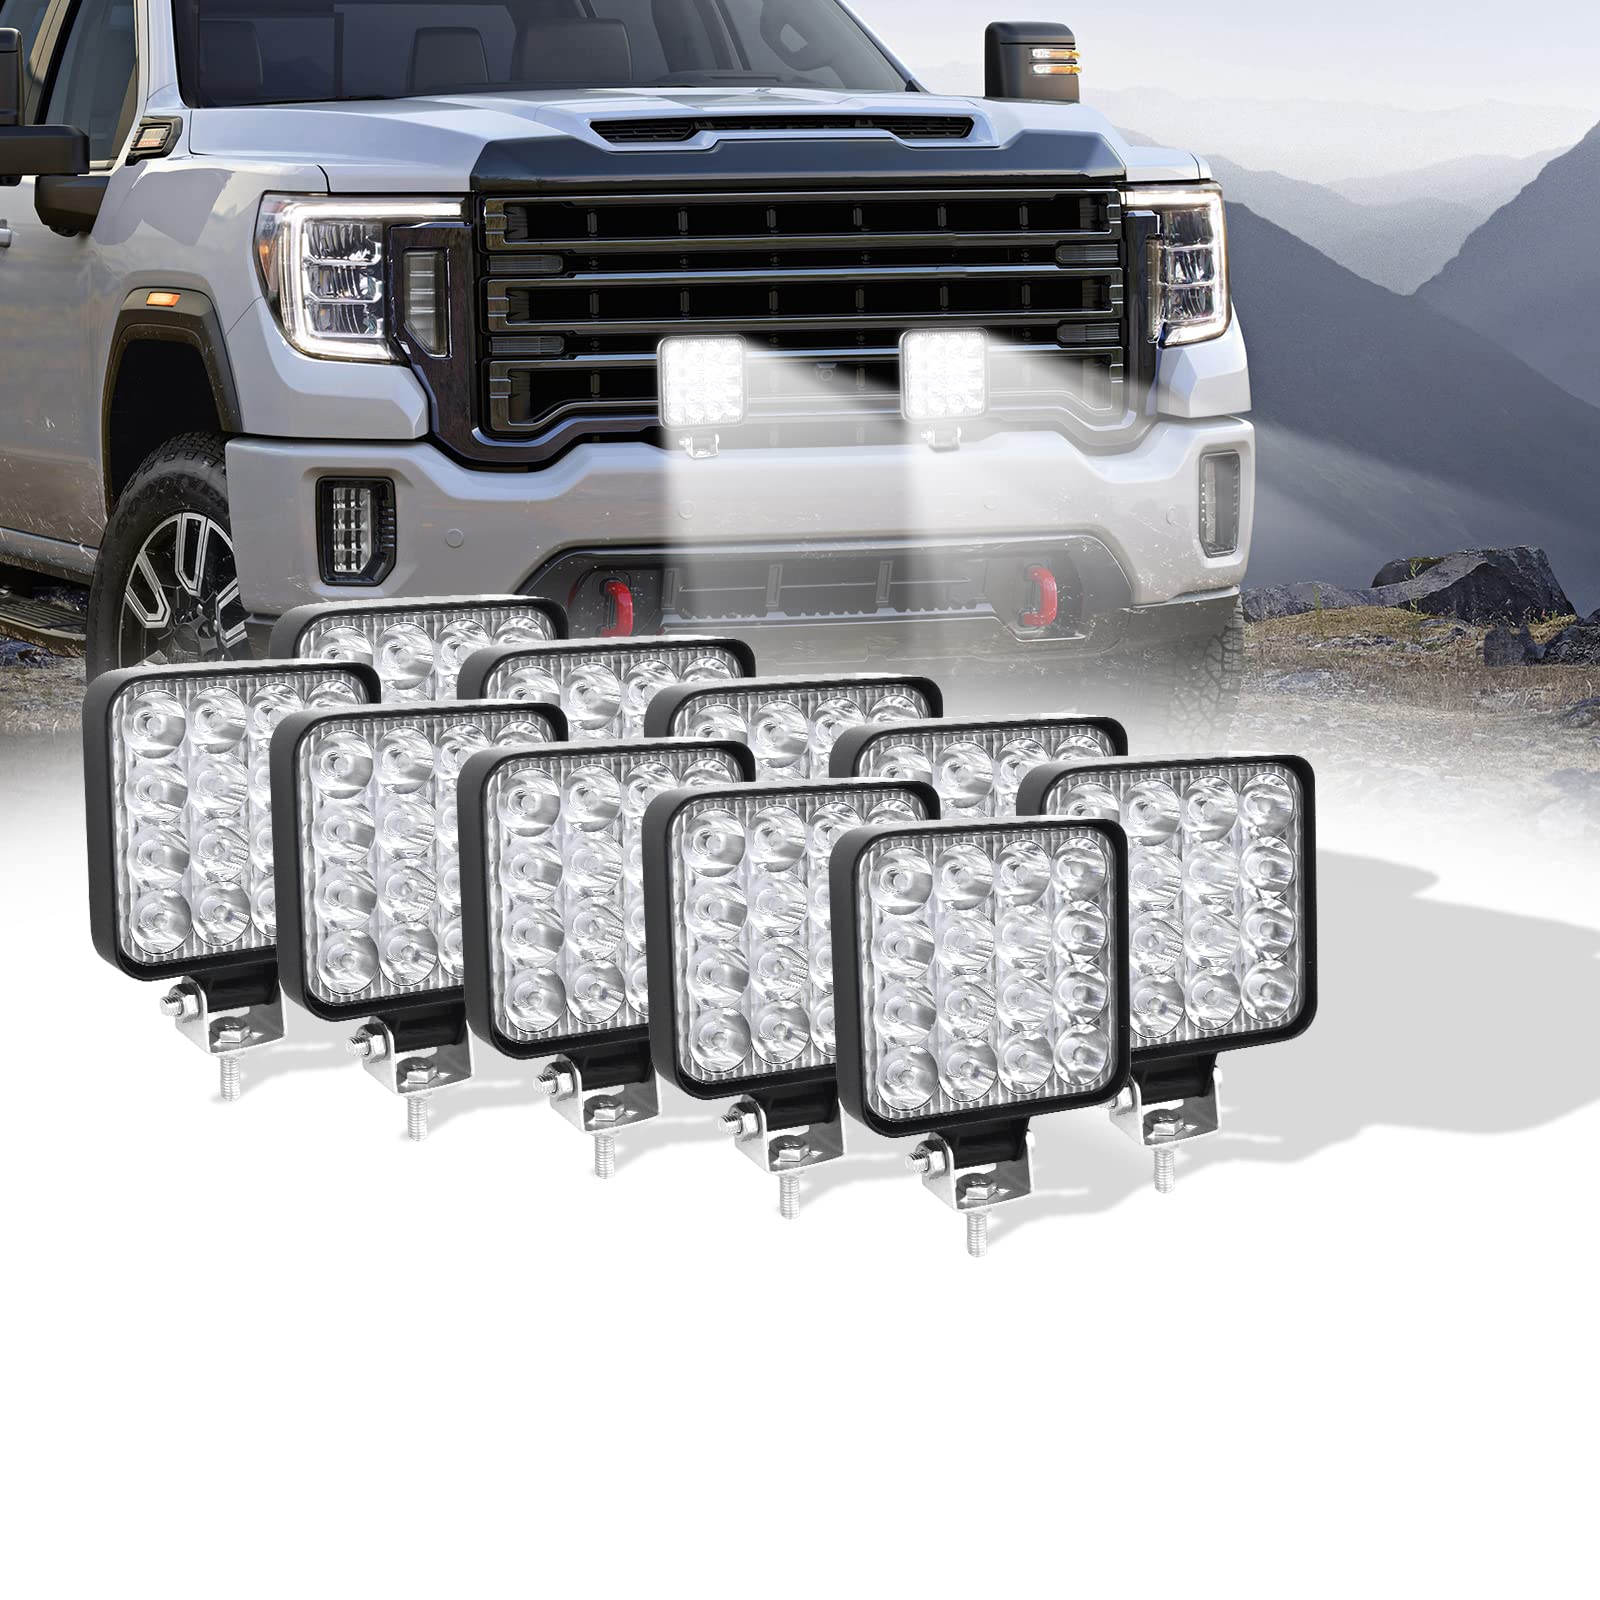 SKYWORLD 3.3 inch LED Pods Lights 48W Work Light 12V Spot Beam Off Road Driving Lights 6000K Car Lamp for Truck SUV Vehicles Atvs Utvs 10PCS von SKYWORLD